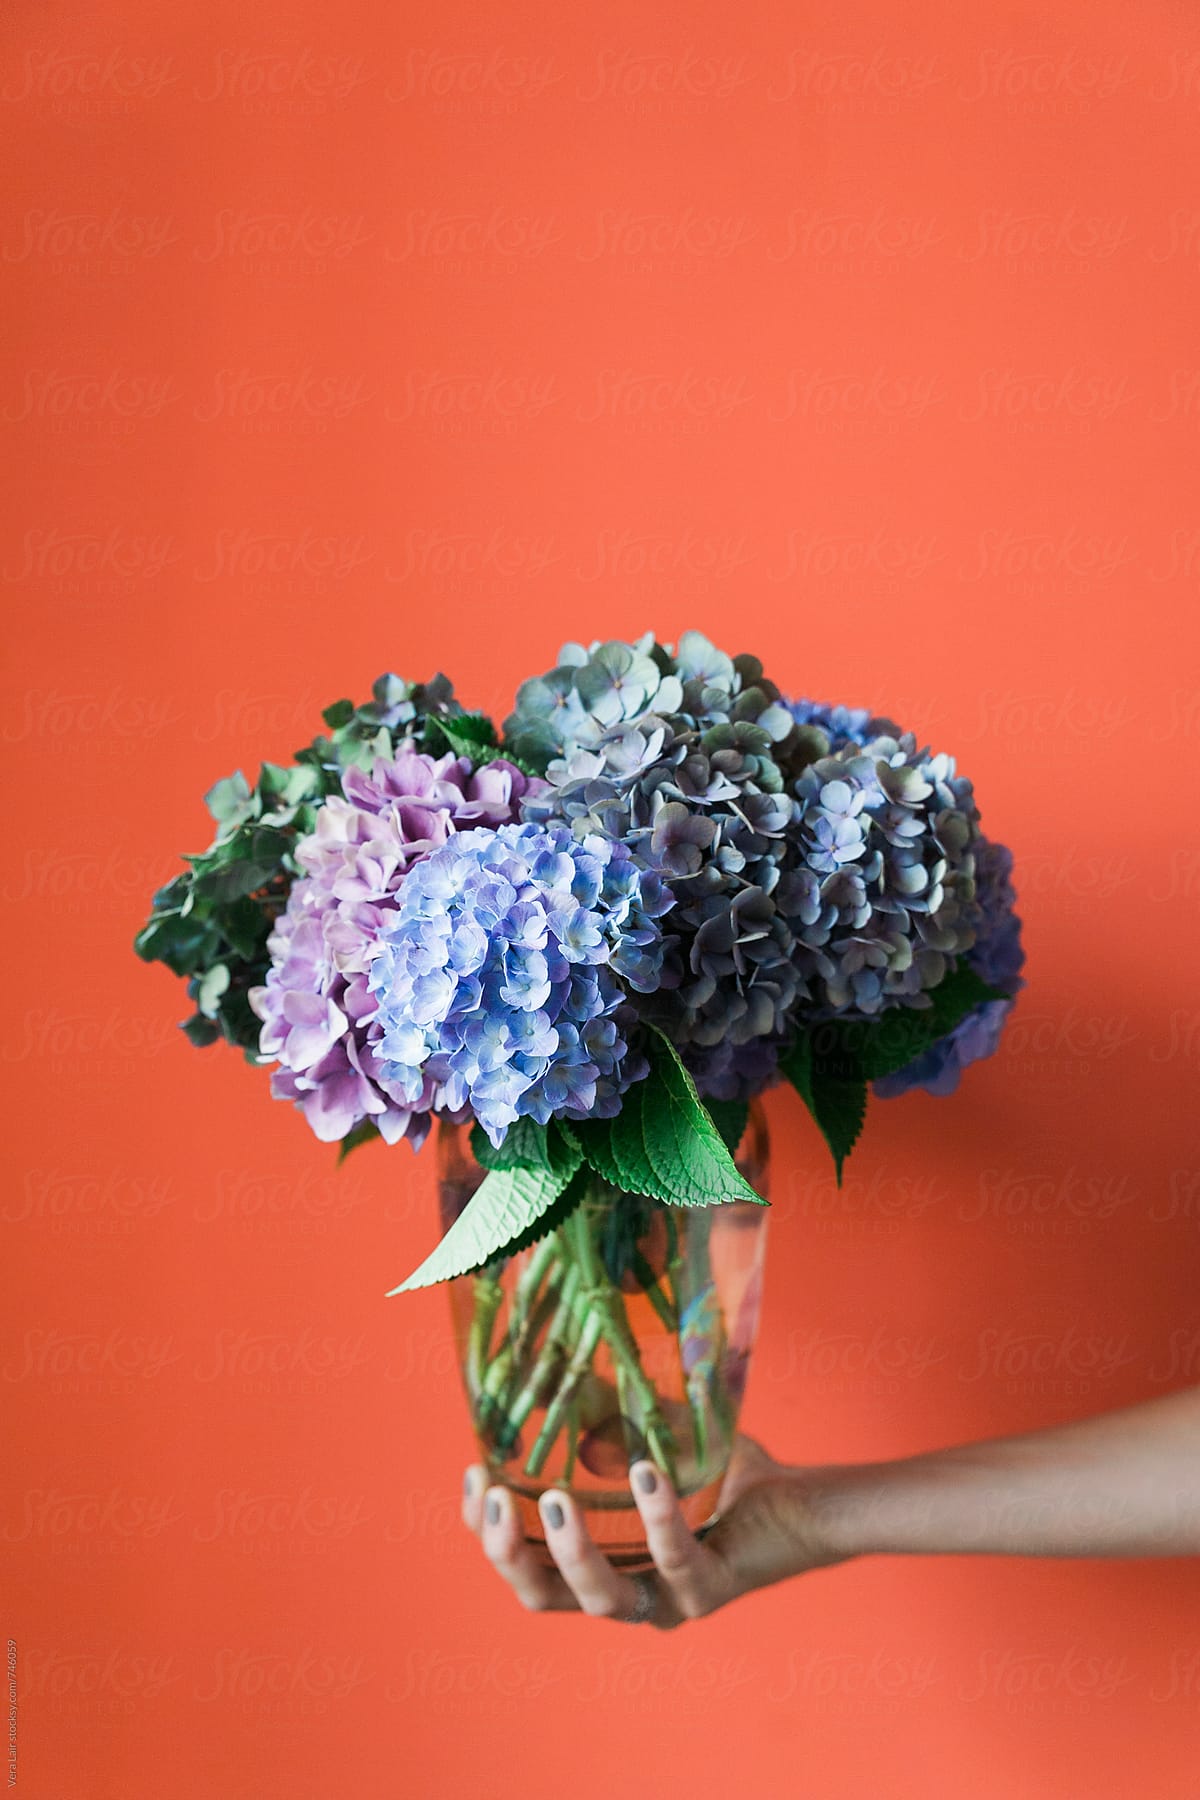 A bouquet of hydrangea